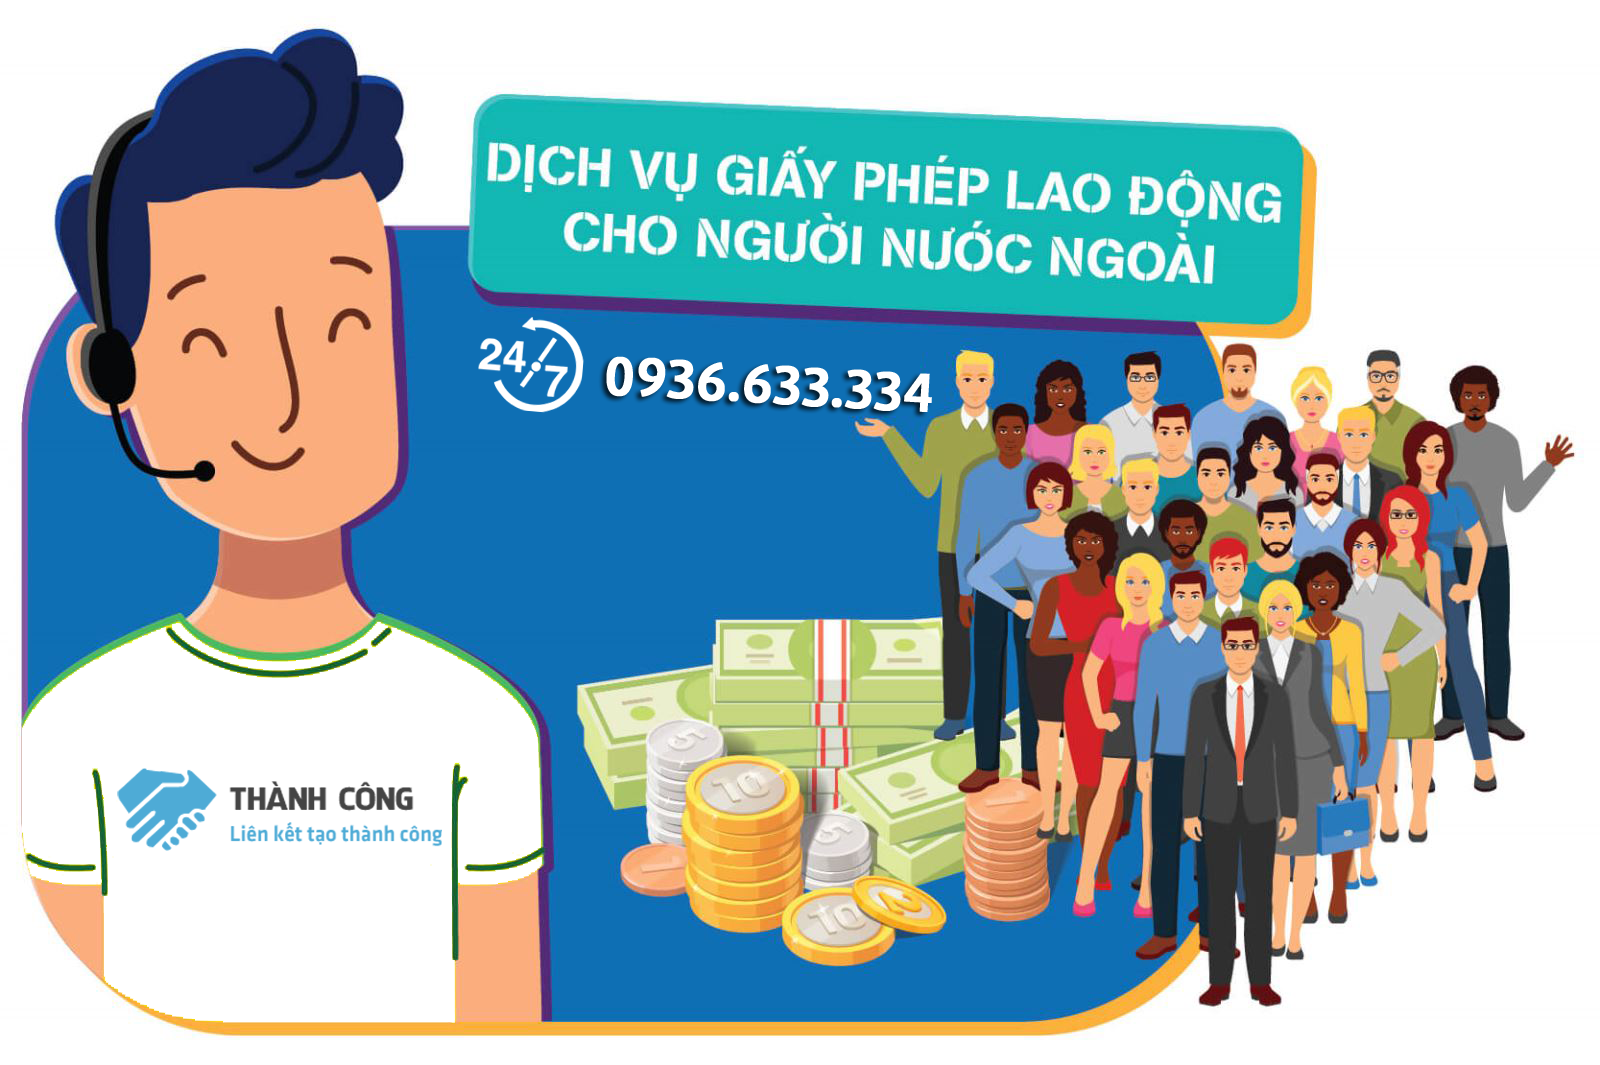 Dịch vụ xin cấp giấy phép lao động cho người nước ngoài tại Việt Nam nhanh chóng, uy tín hàng đầu 